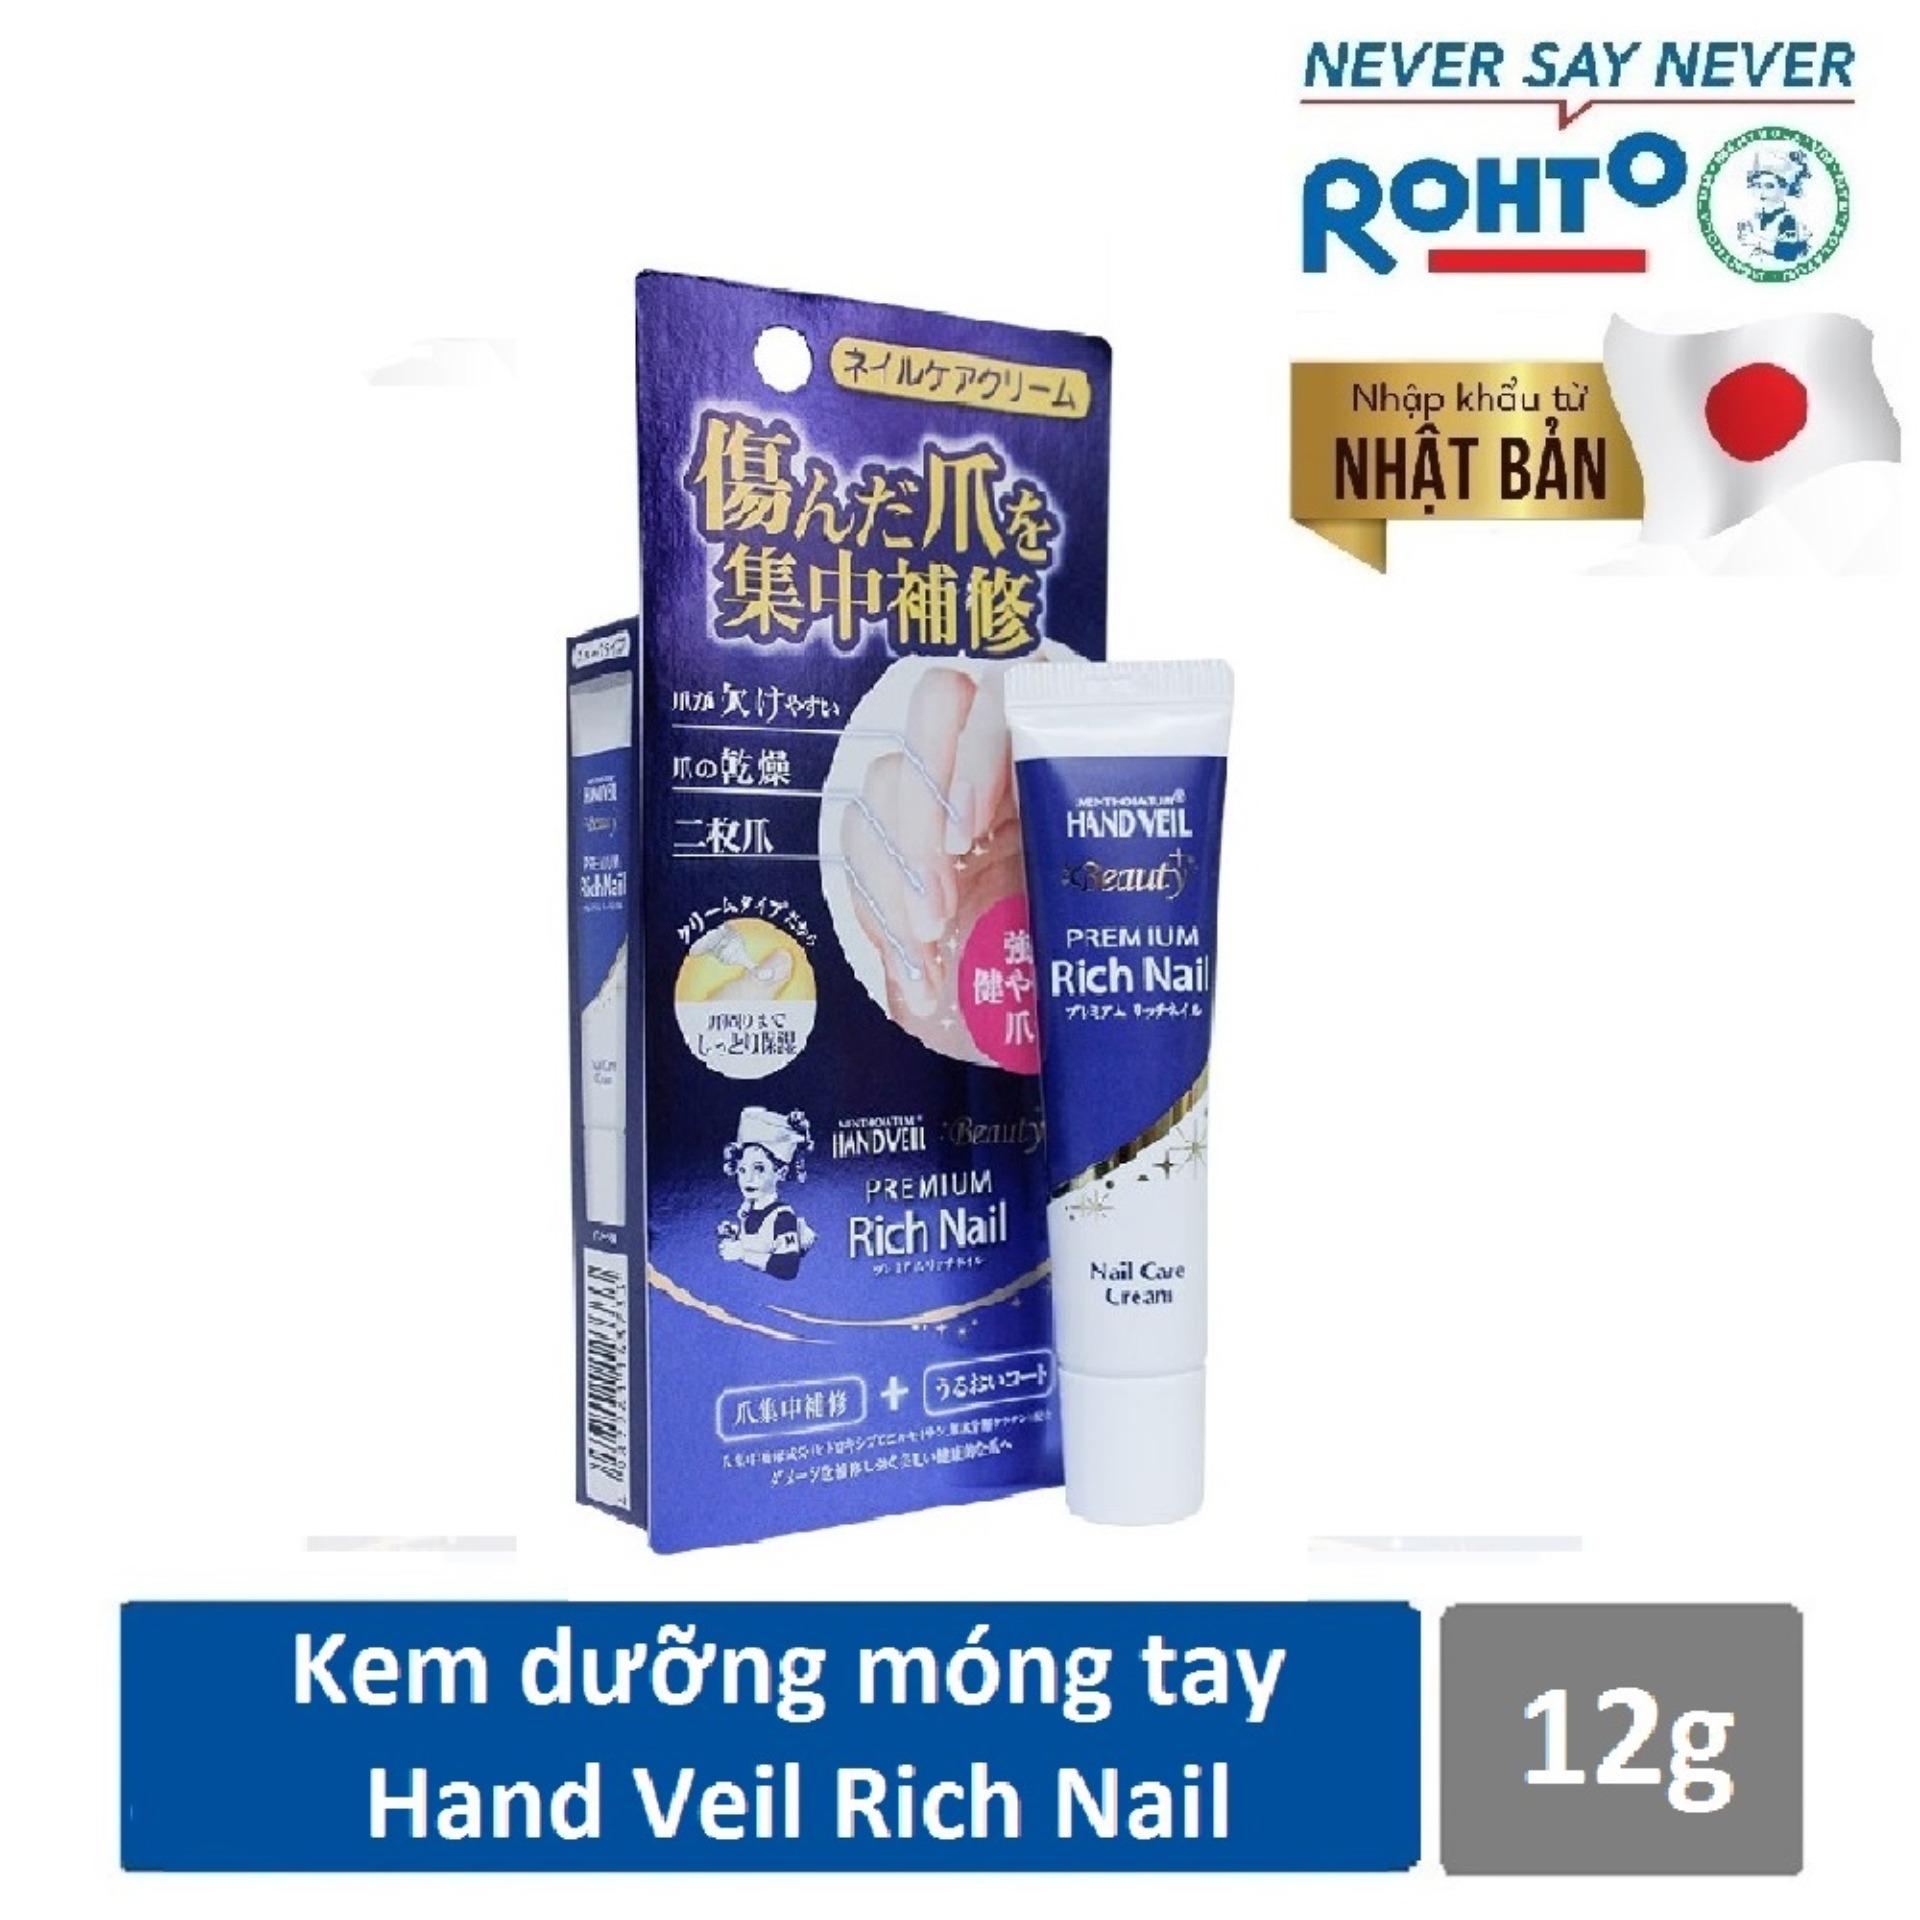 Kem dưỡng móng tay Mentholatum Hand Veil Premium Rich Nail 12g ( Nhập khẩu từ Nhật Bản)